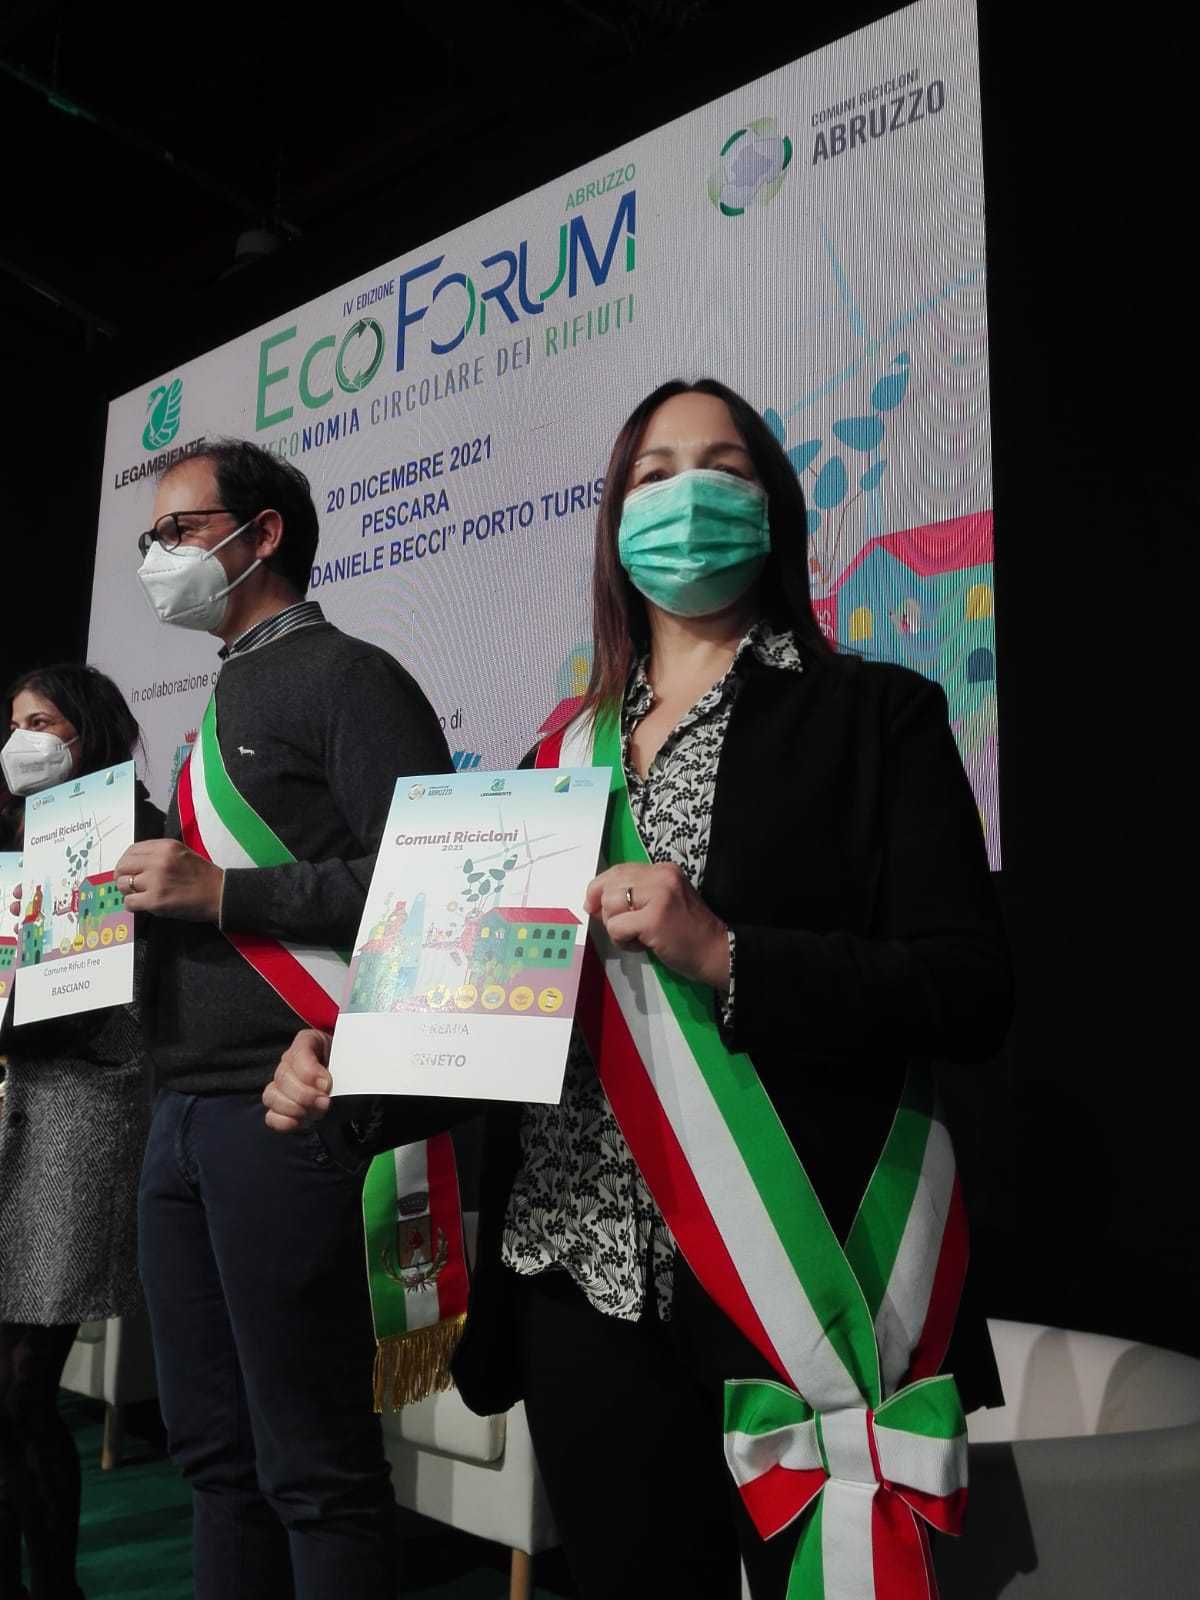 Ecoforum Legambiente: premiati i comuni ricicloni d’Abruzzo:  Pineto +4,7% di differenziata rispetto al 2019